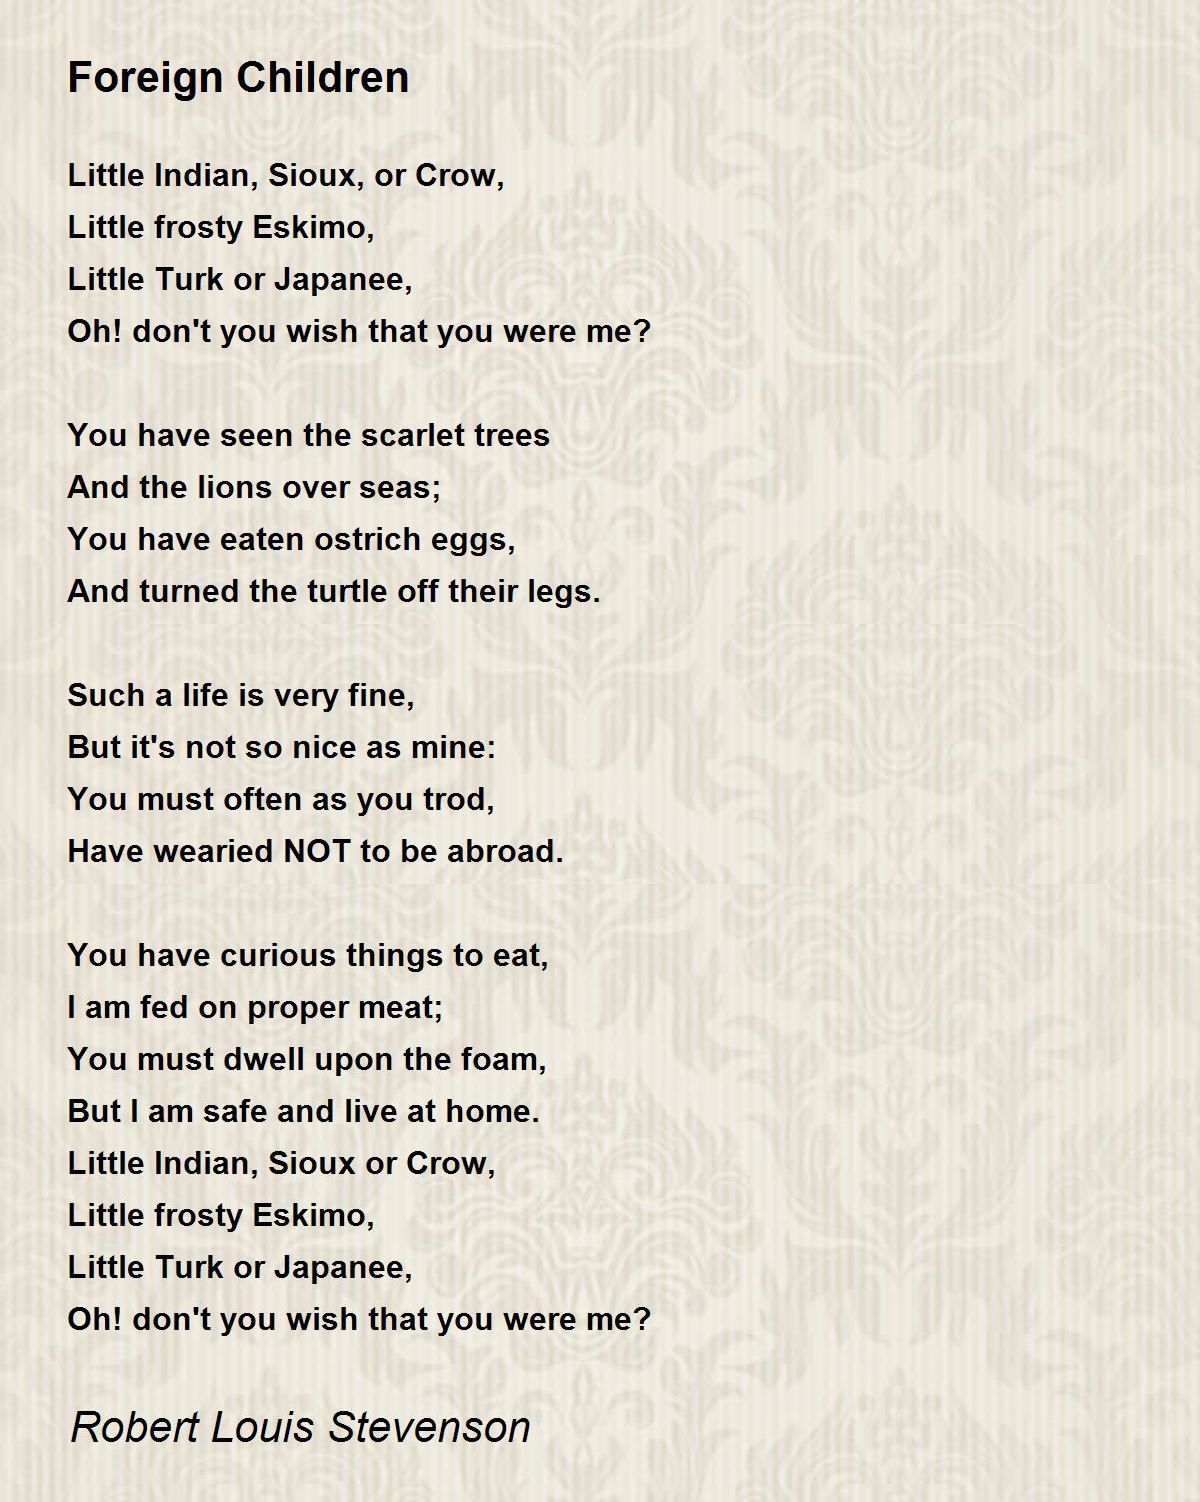 Foreign Children Poem by Robert Louis Stevenson - Poem Hunter